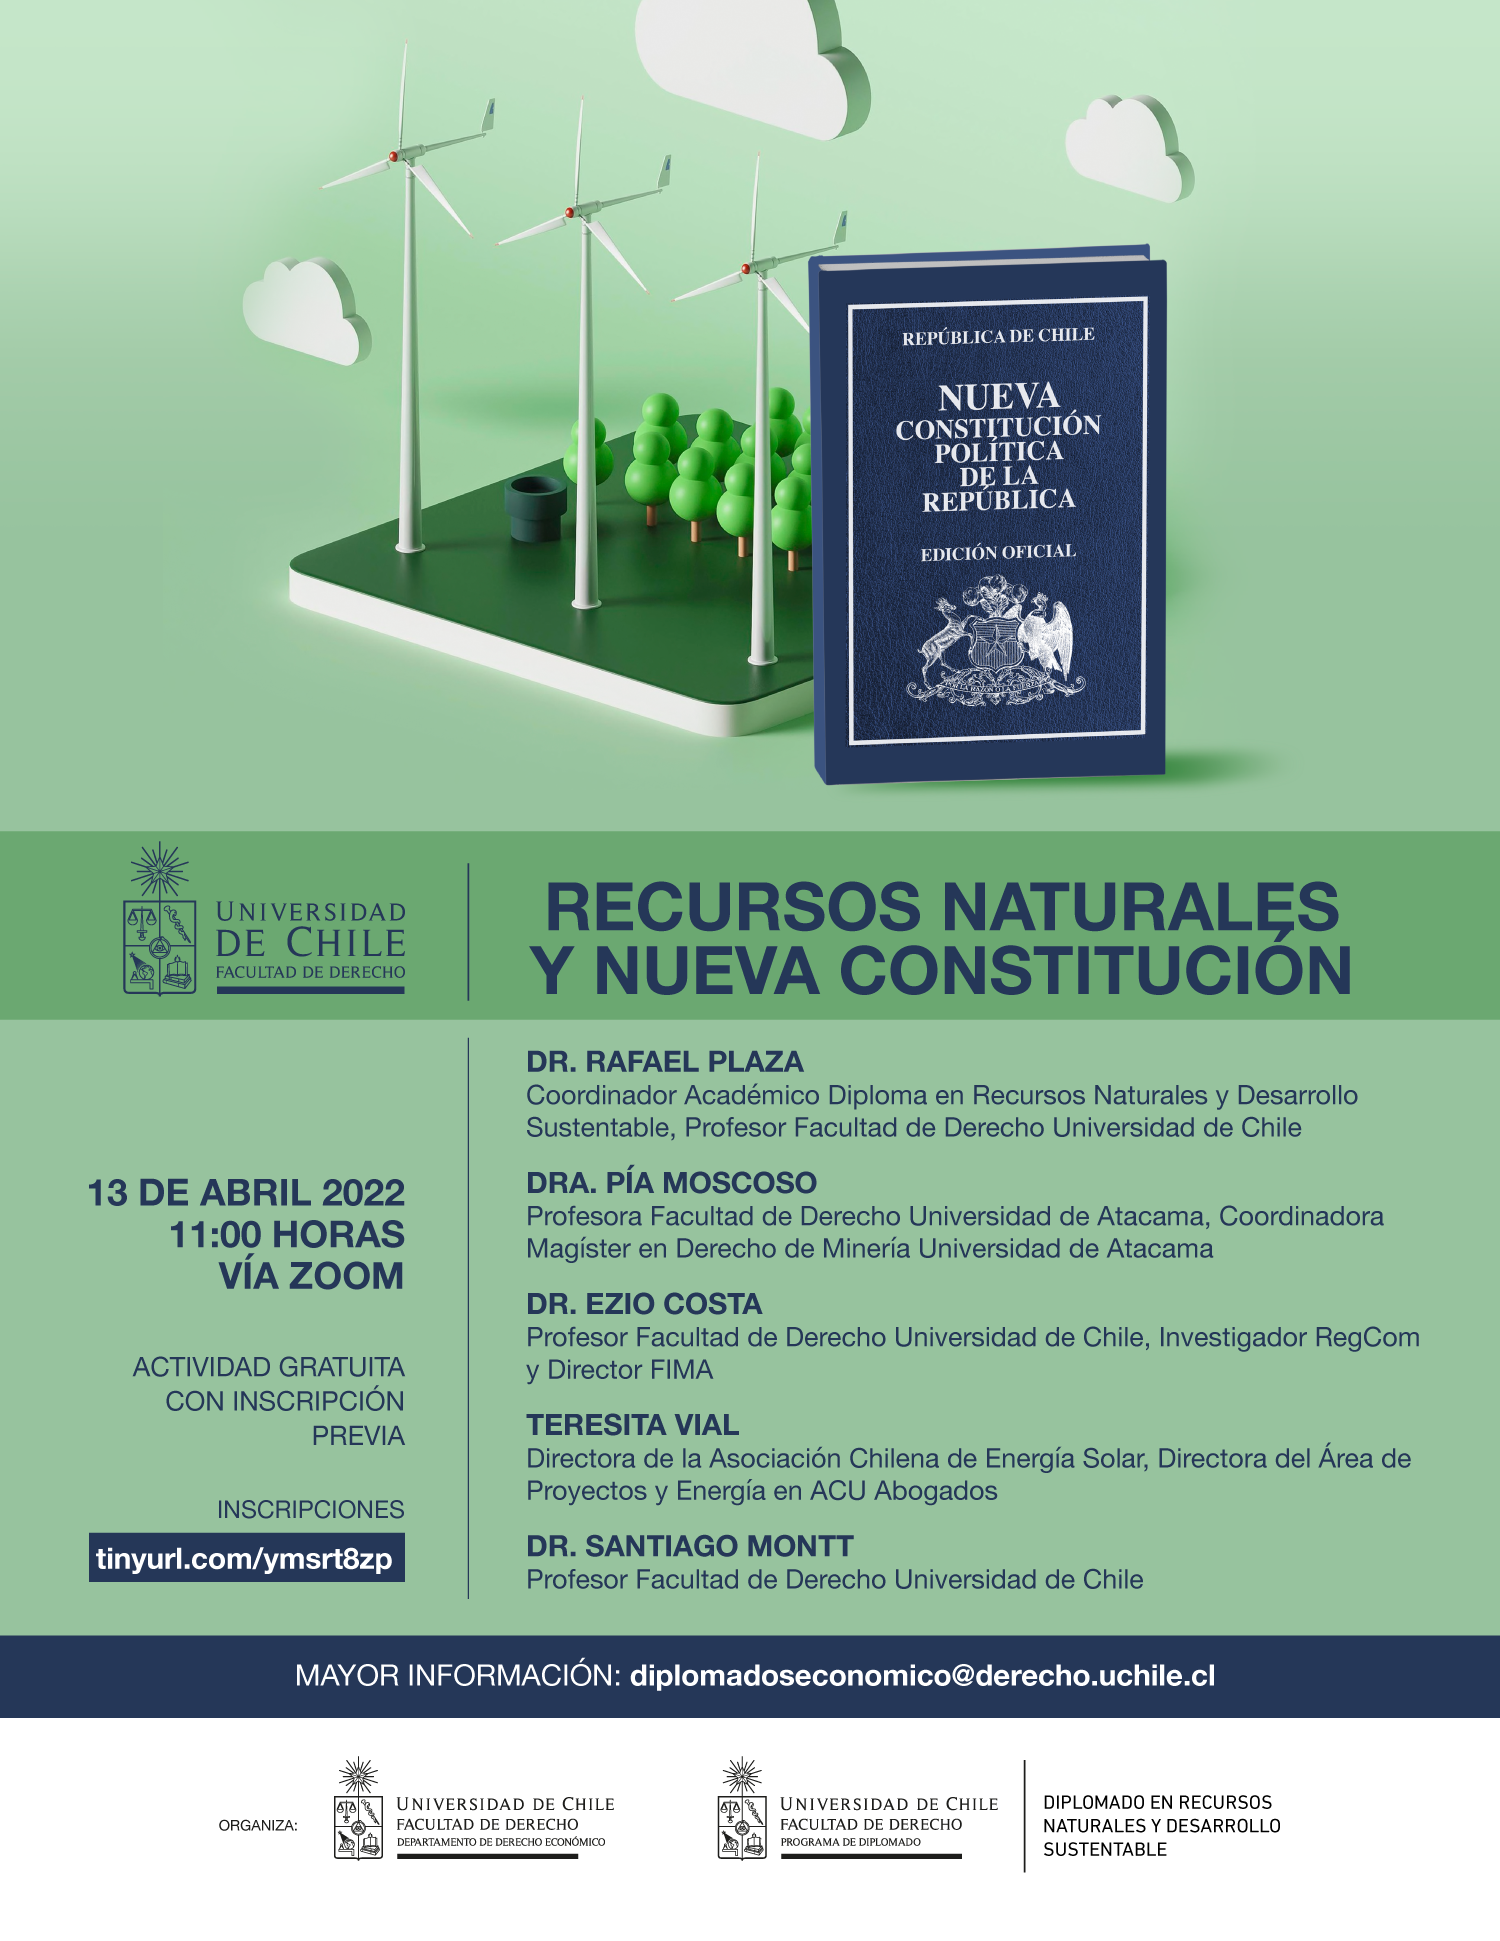 Facultad de Derecho de la Universidad de Chile invita a Seminario "Recursos naturales y nueva Constitución"